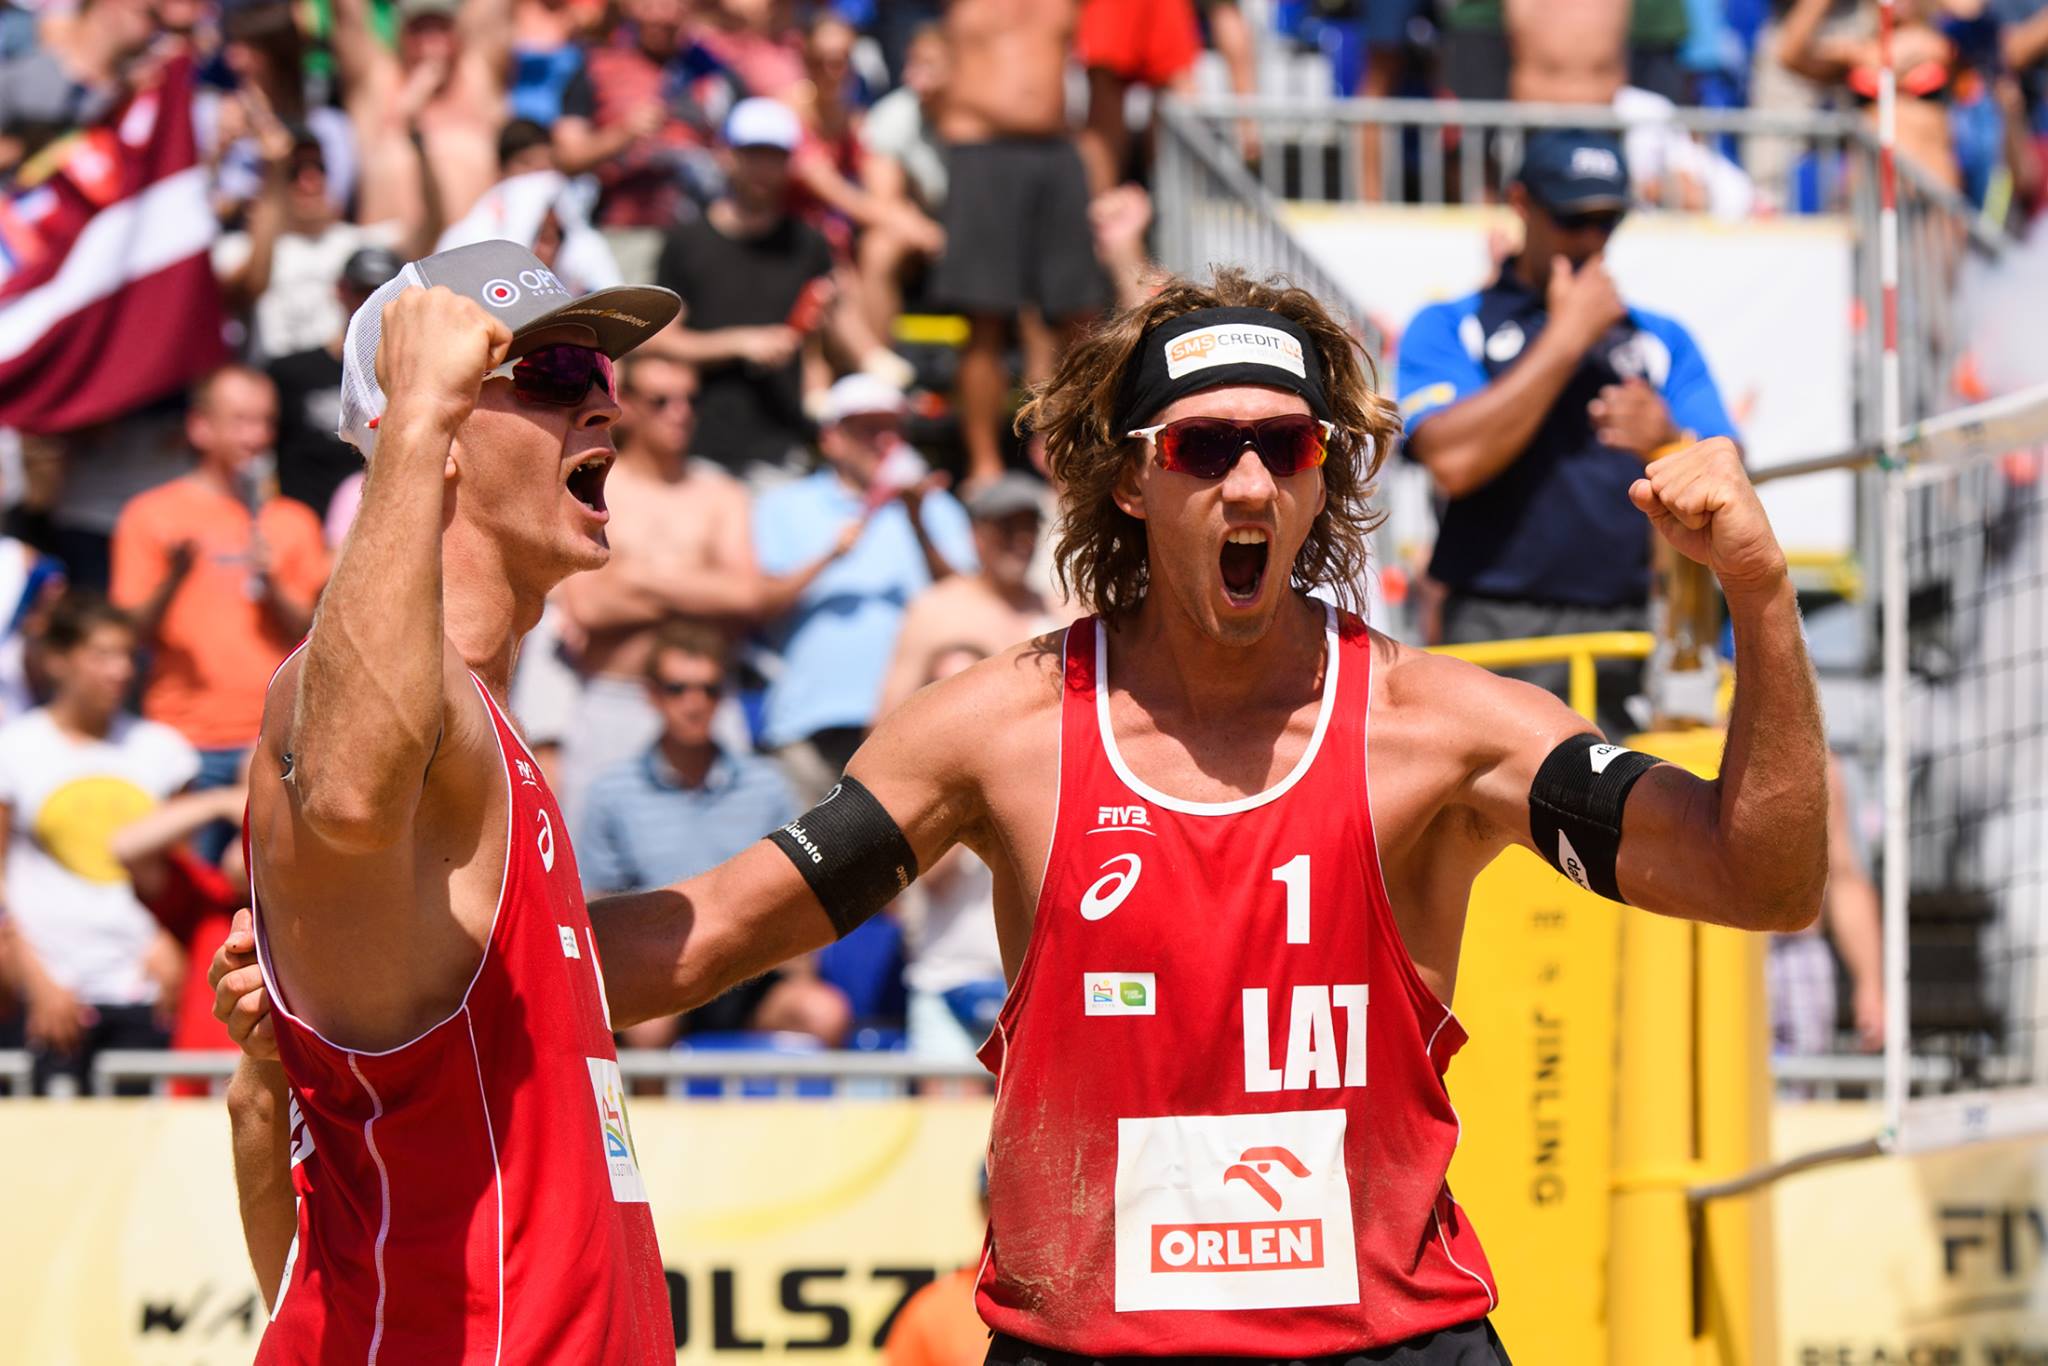 Sveicam ar UZVARU! Latviešu pludmales volejbolisti Aleksandrs Samoilovs un Jānis Šmēdiņš izcīna 1.vietu Polijas ”Grand Slam” turnīrā!